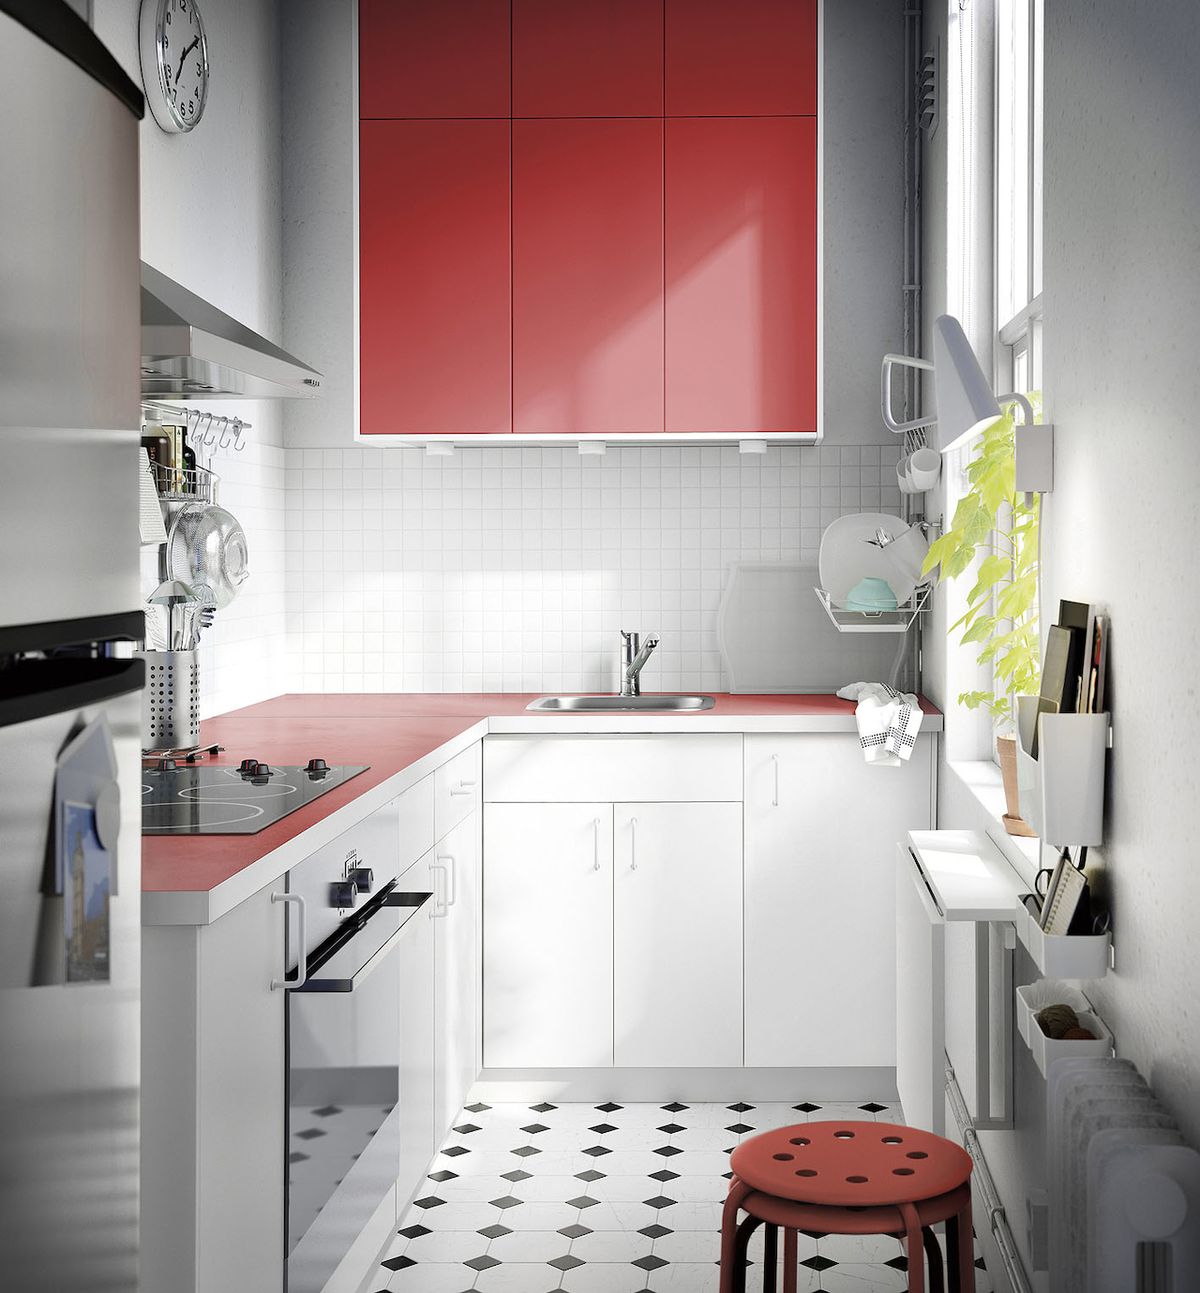 Bílá často převažuje v kuchyních, červená podporuje chuť k jídlu.